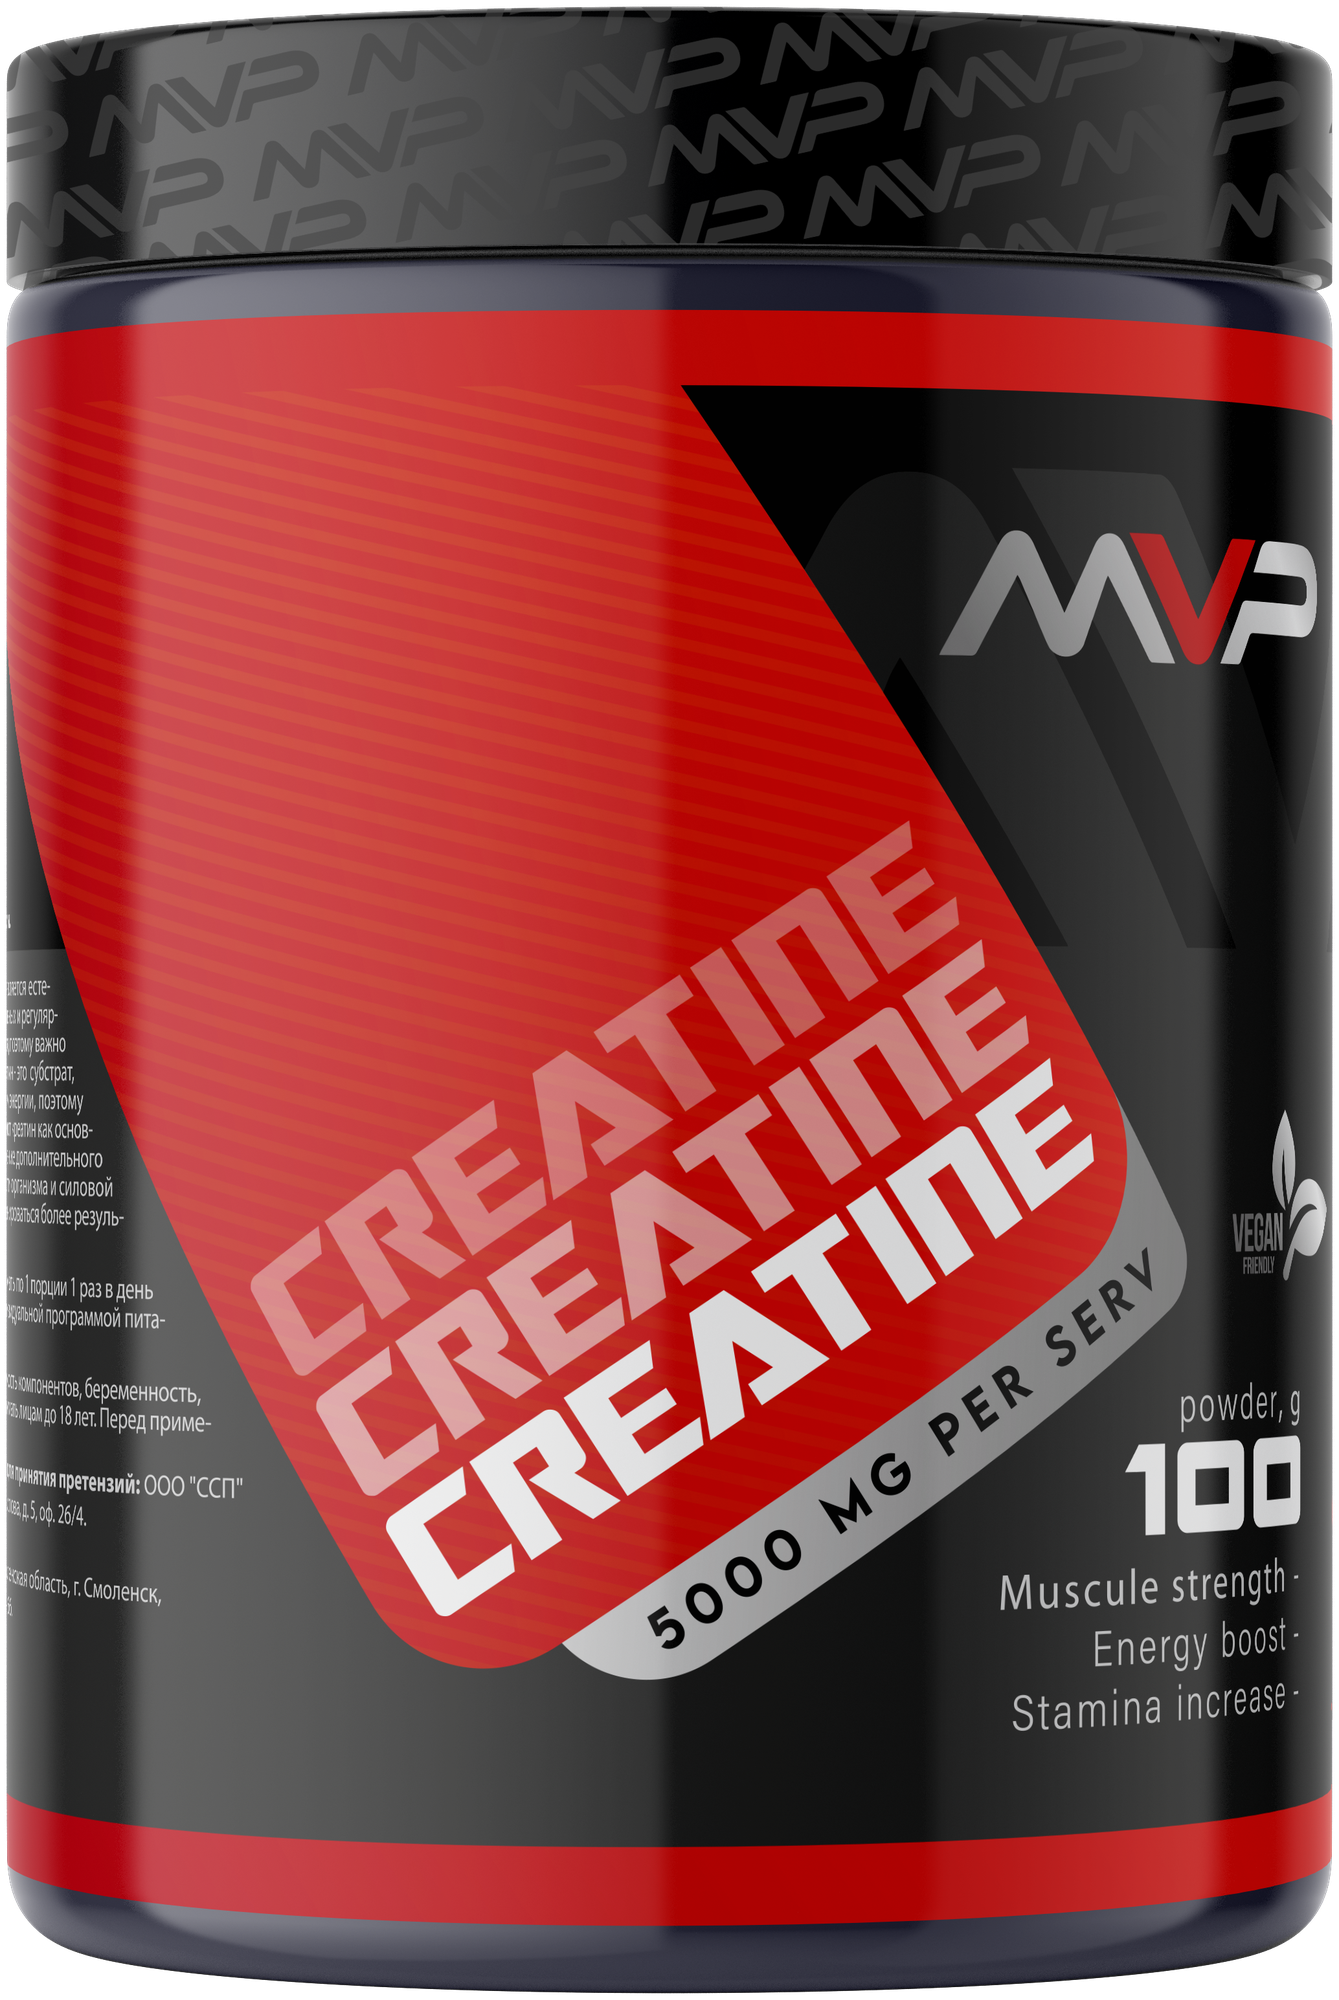 MVP Креатин моногидрат порошок/Creatine Monohydrate аминокислота / спортивное питание для набора массы и роста мышц без сахара 100 гр